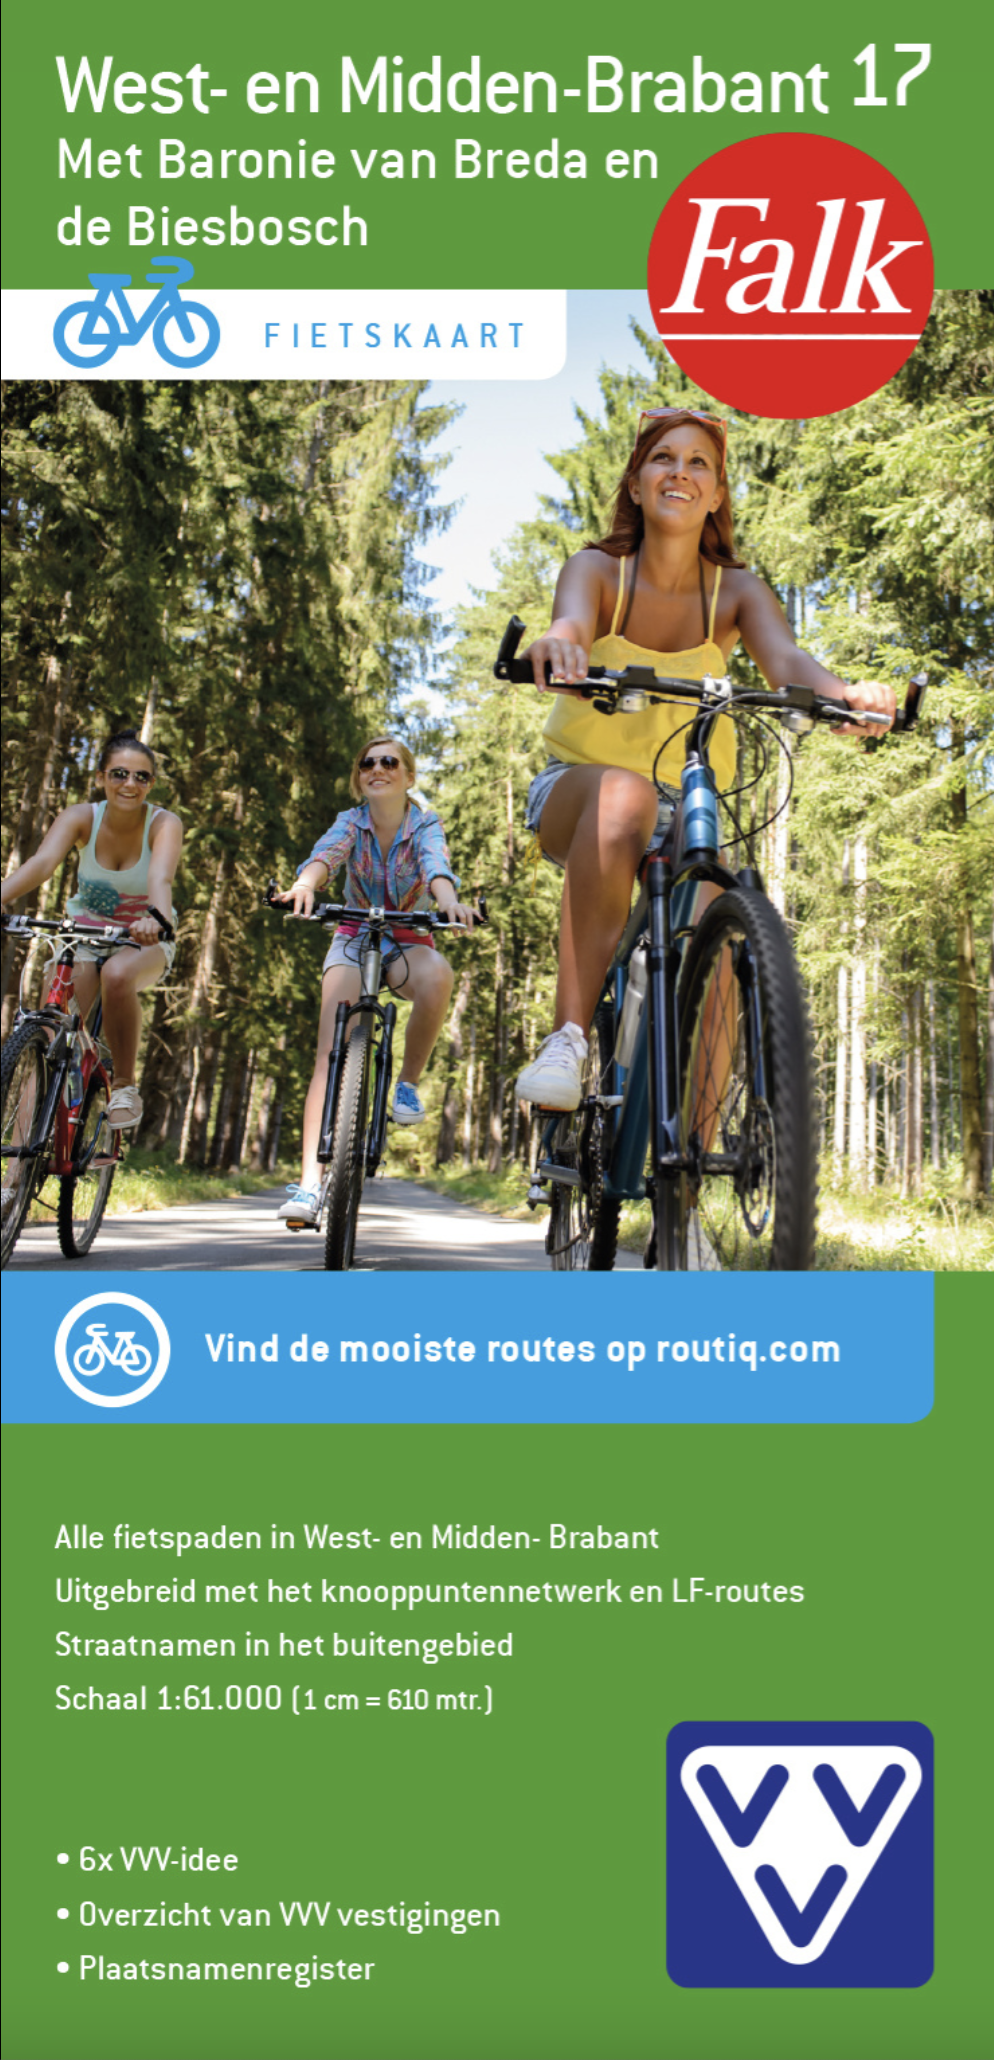 Online bestellen: Fietskaart 17 West- en Midden Brabant ( Met knooppuntennetwerk) | Falk